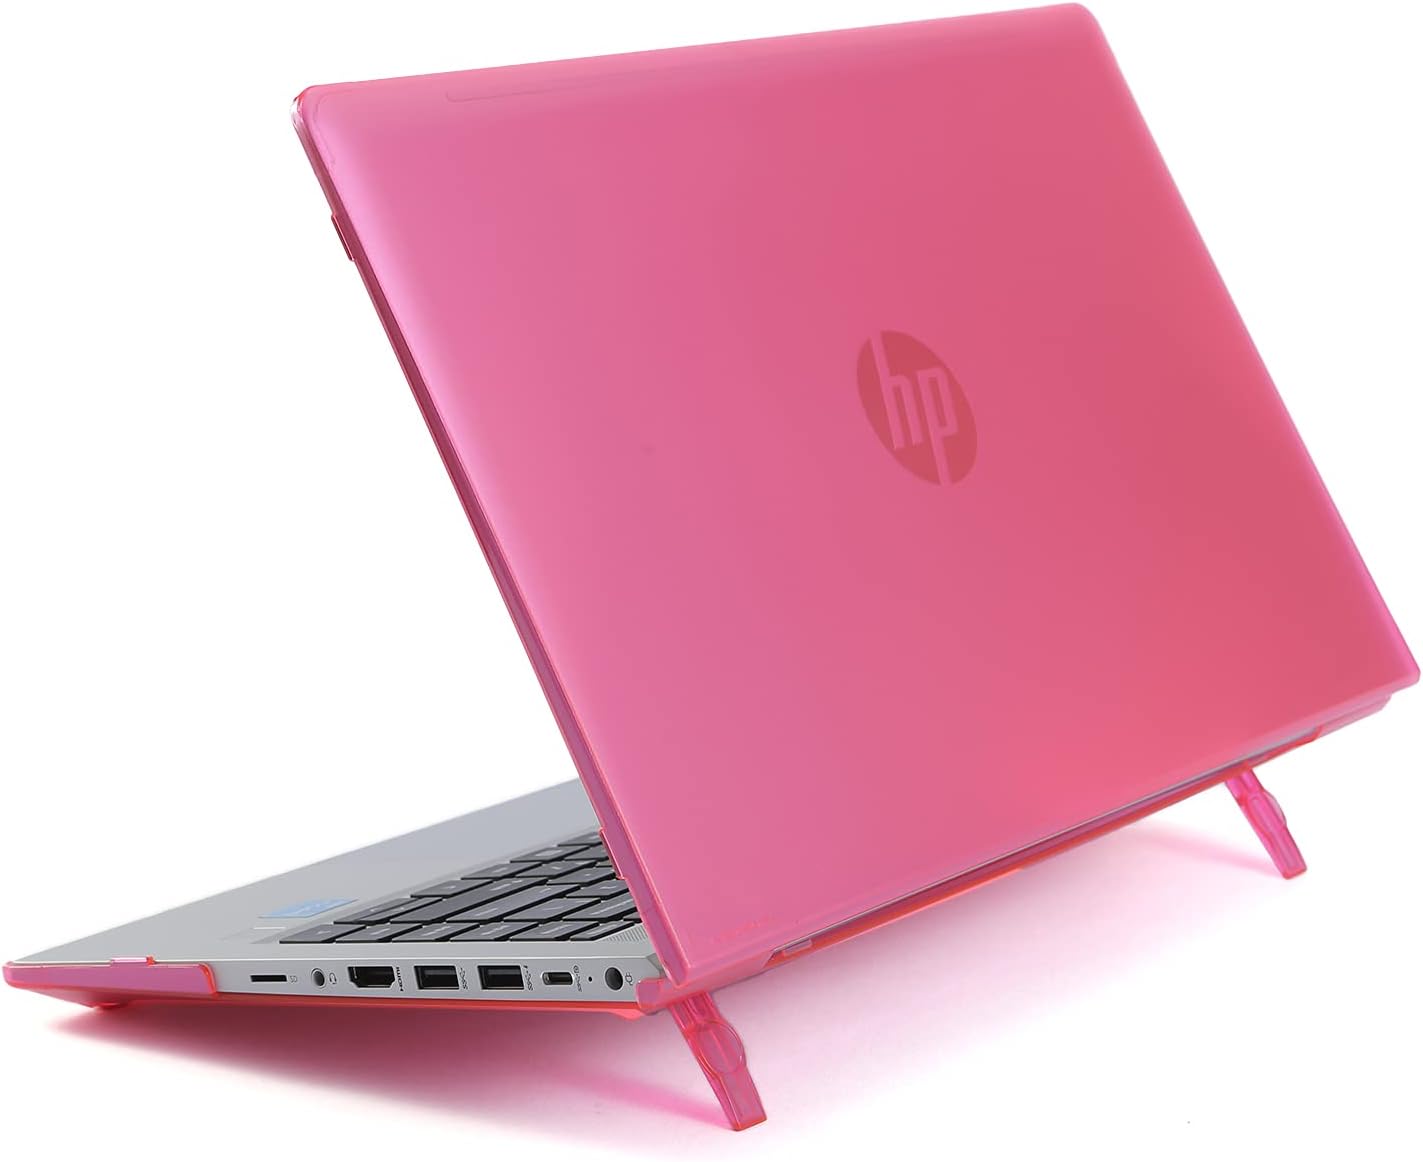 mCover Funda compatible solo para HP ProBook 440 G8 / G9 y 445 G8 / G8 / G9 y 445 G8 / G9 Series Notebook PC (no compatible con otros modelos HP), color rosa